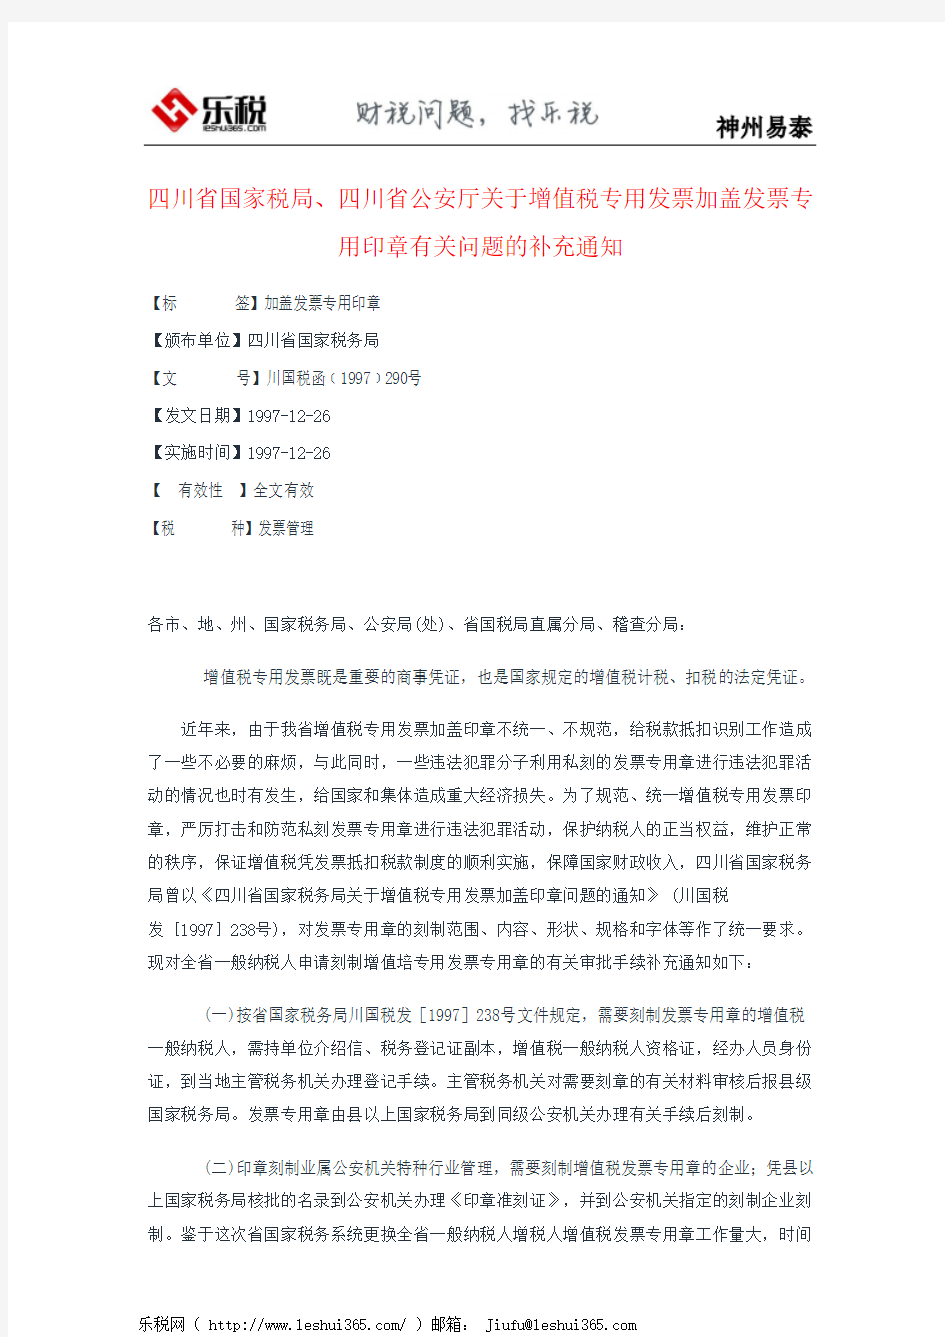 四川省国家税局、四川省公安厅关于增值税专用发票加盖发票专用印